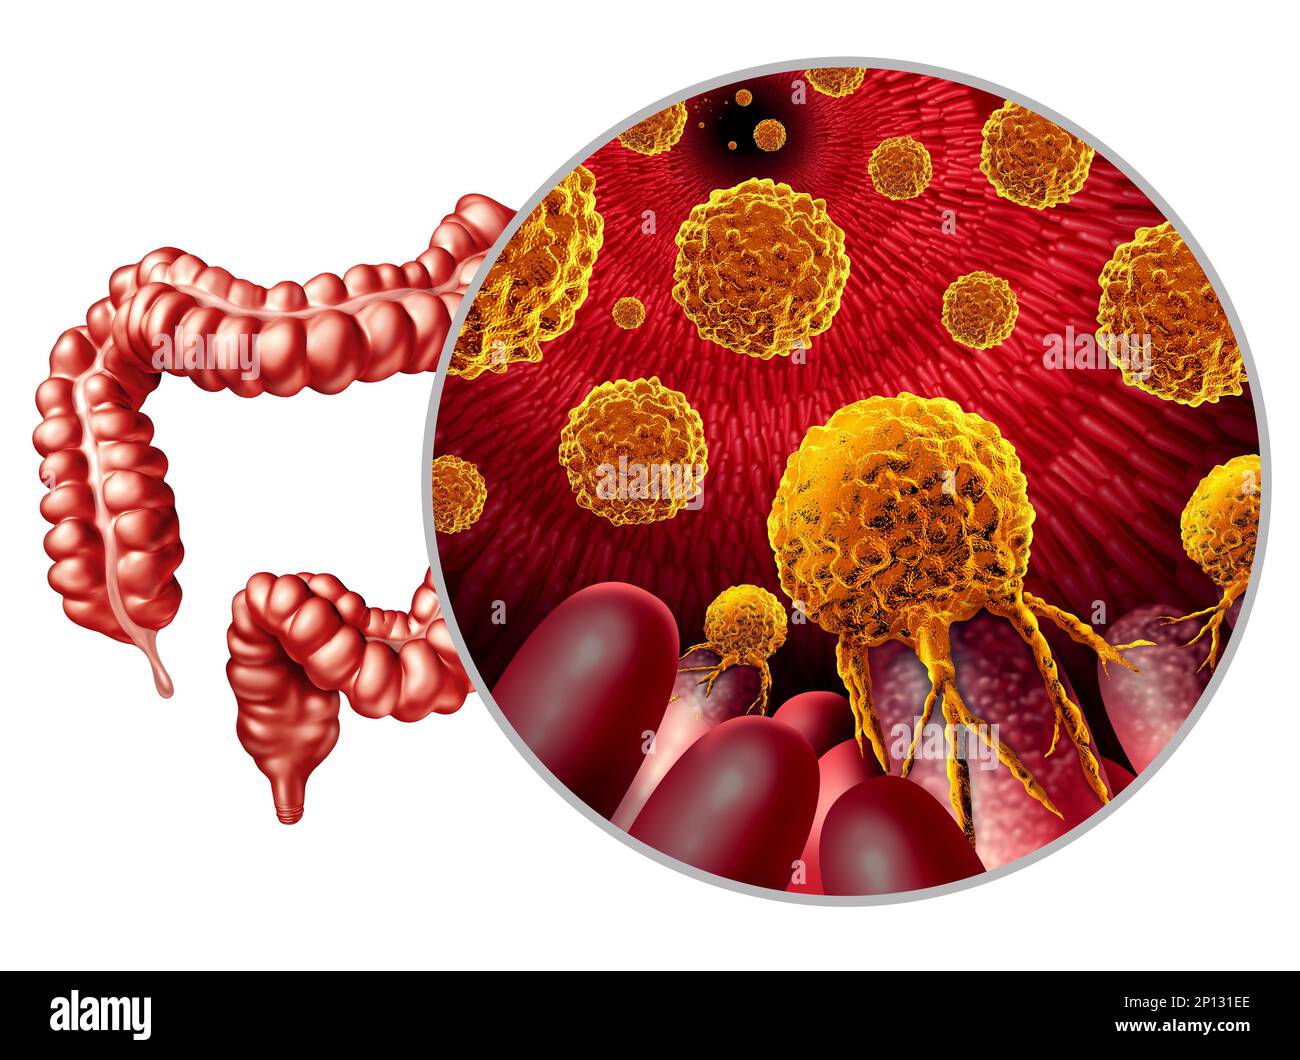 Croissance du cancer du côlon ou tumeur maligne colorectal concept comme illustration médicale d'un gros intestin avec une maladie carcinogène métastatique Banque D'Images